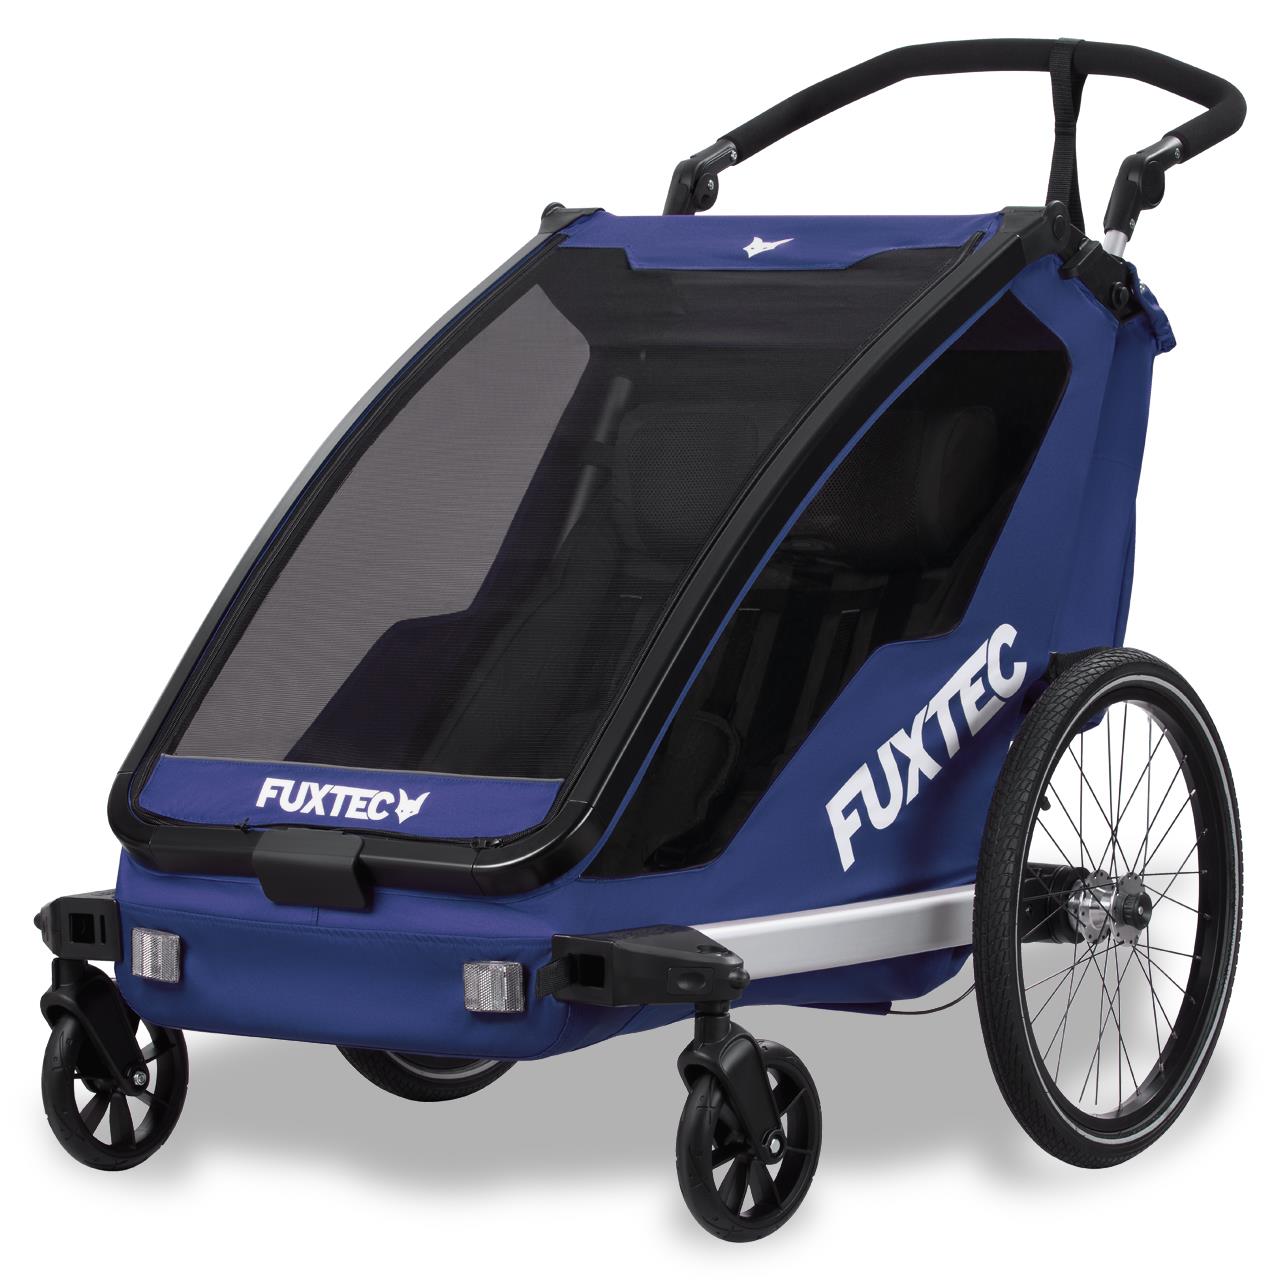 FUXTEC FX-FA1: Carrello Bici Sportivo Convertibile per Bambini - Multifunzione, Sicuro e Confortevole - BLU